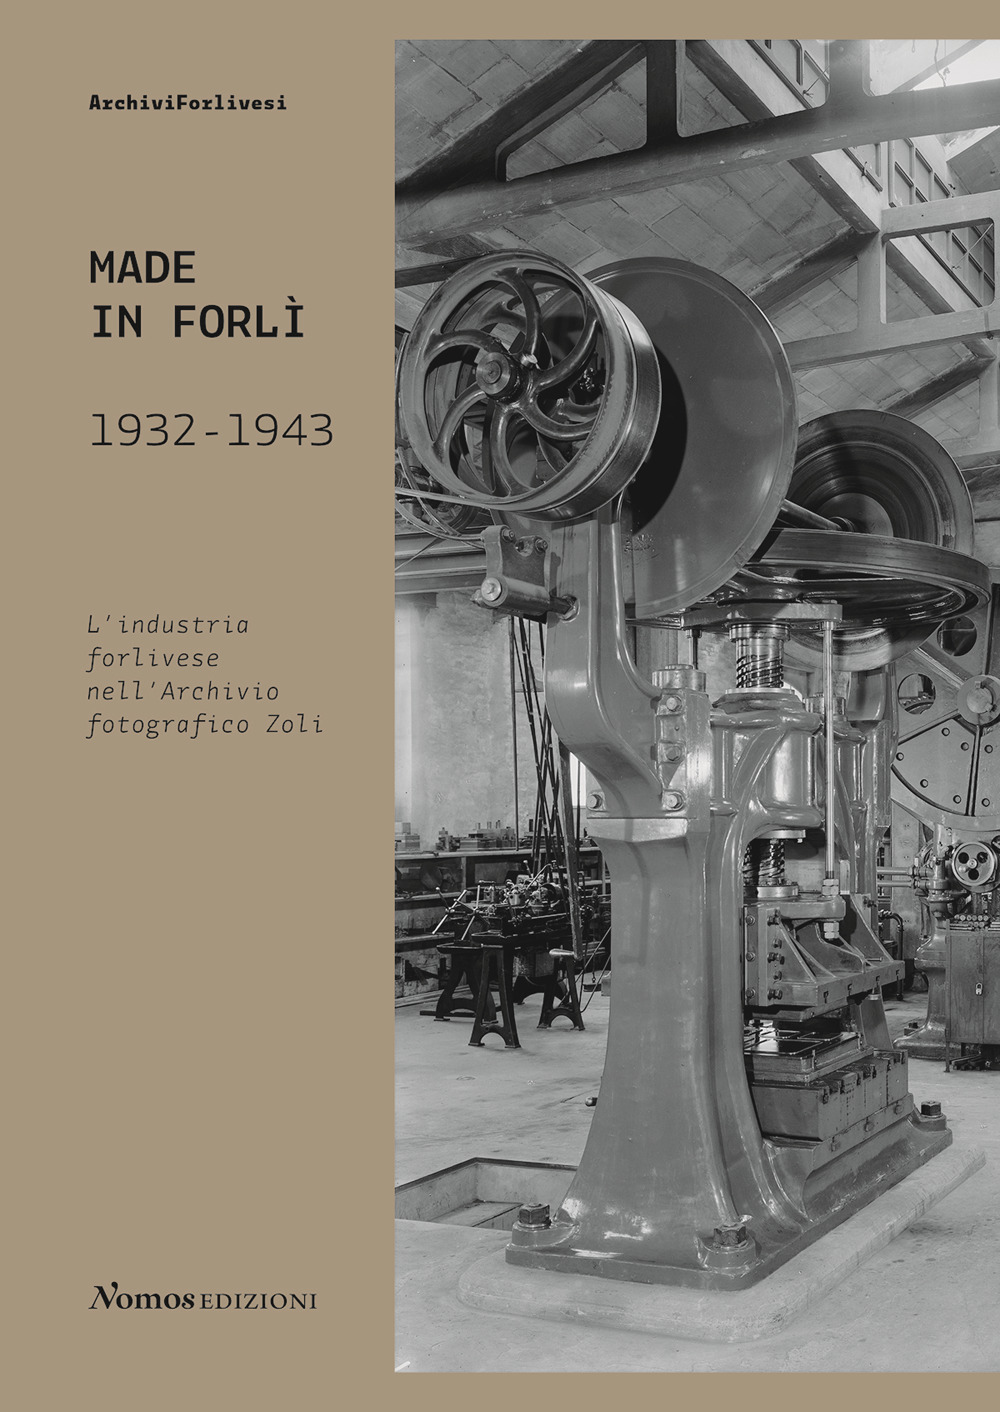 Made in Forlì. 1932-1943. L'industria forlivese nell'Archivio fotografico Zoli